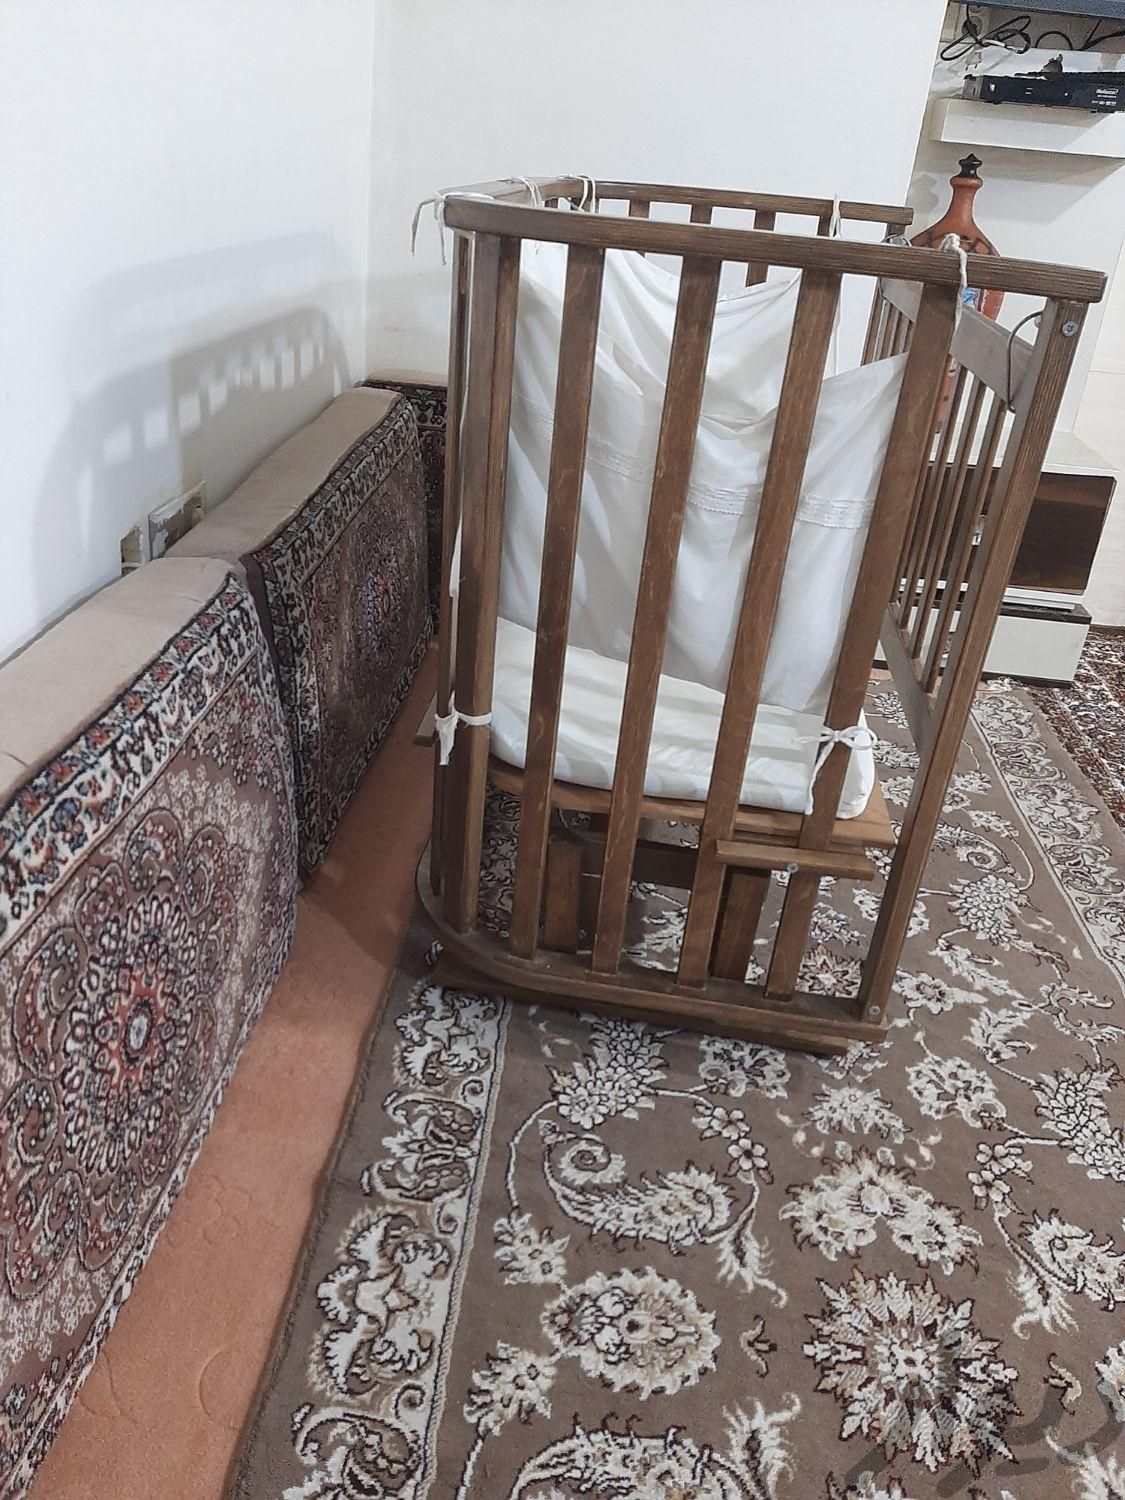 تخت کنارمادرکاملا سالم همراه باتشک ولوازمش|تخت و صندلی بچه|تهران, شهرک ژاندارمری|دیوار